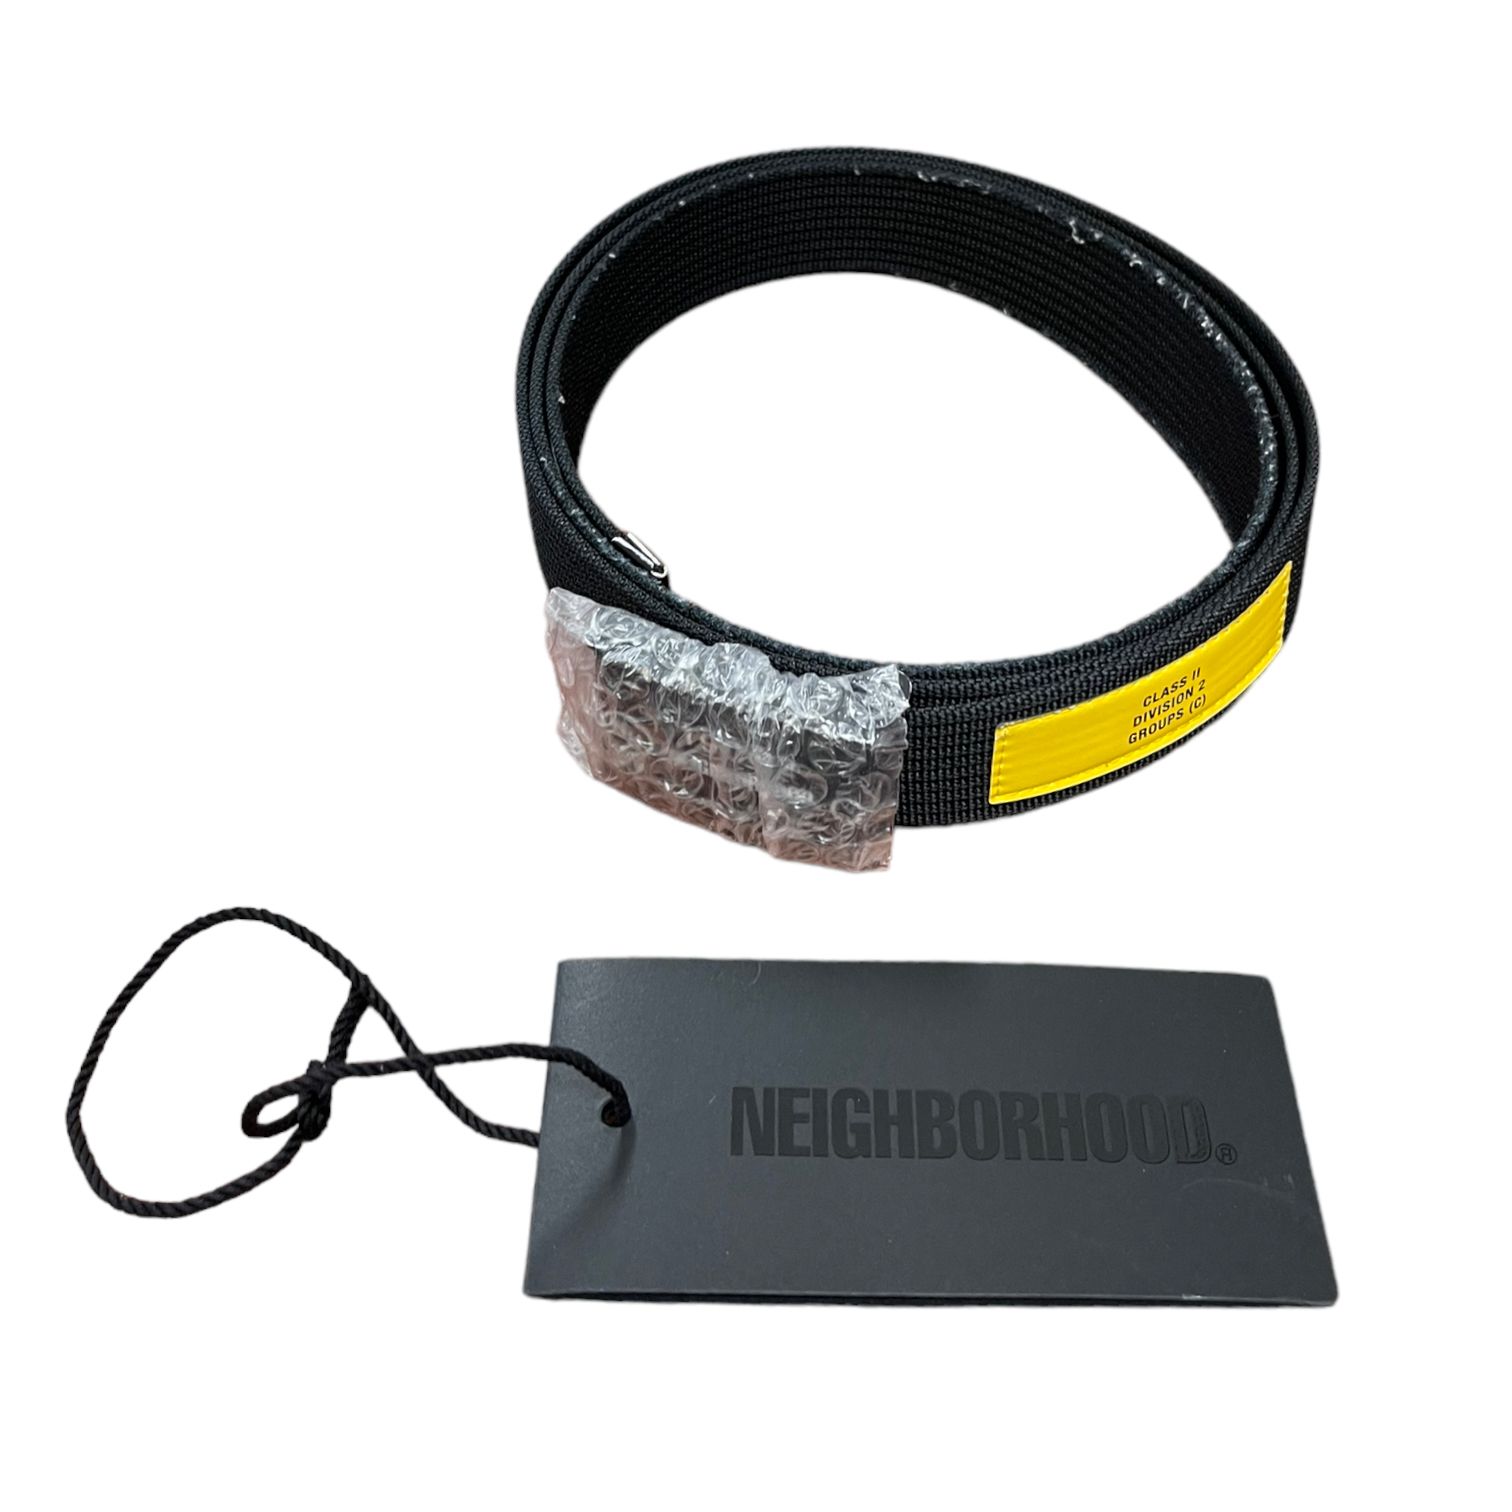 NIGHBORHOOD G.I./N-BELT ネイバーフッド ベルト黒新品